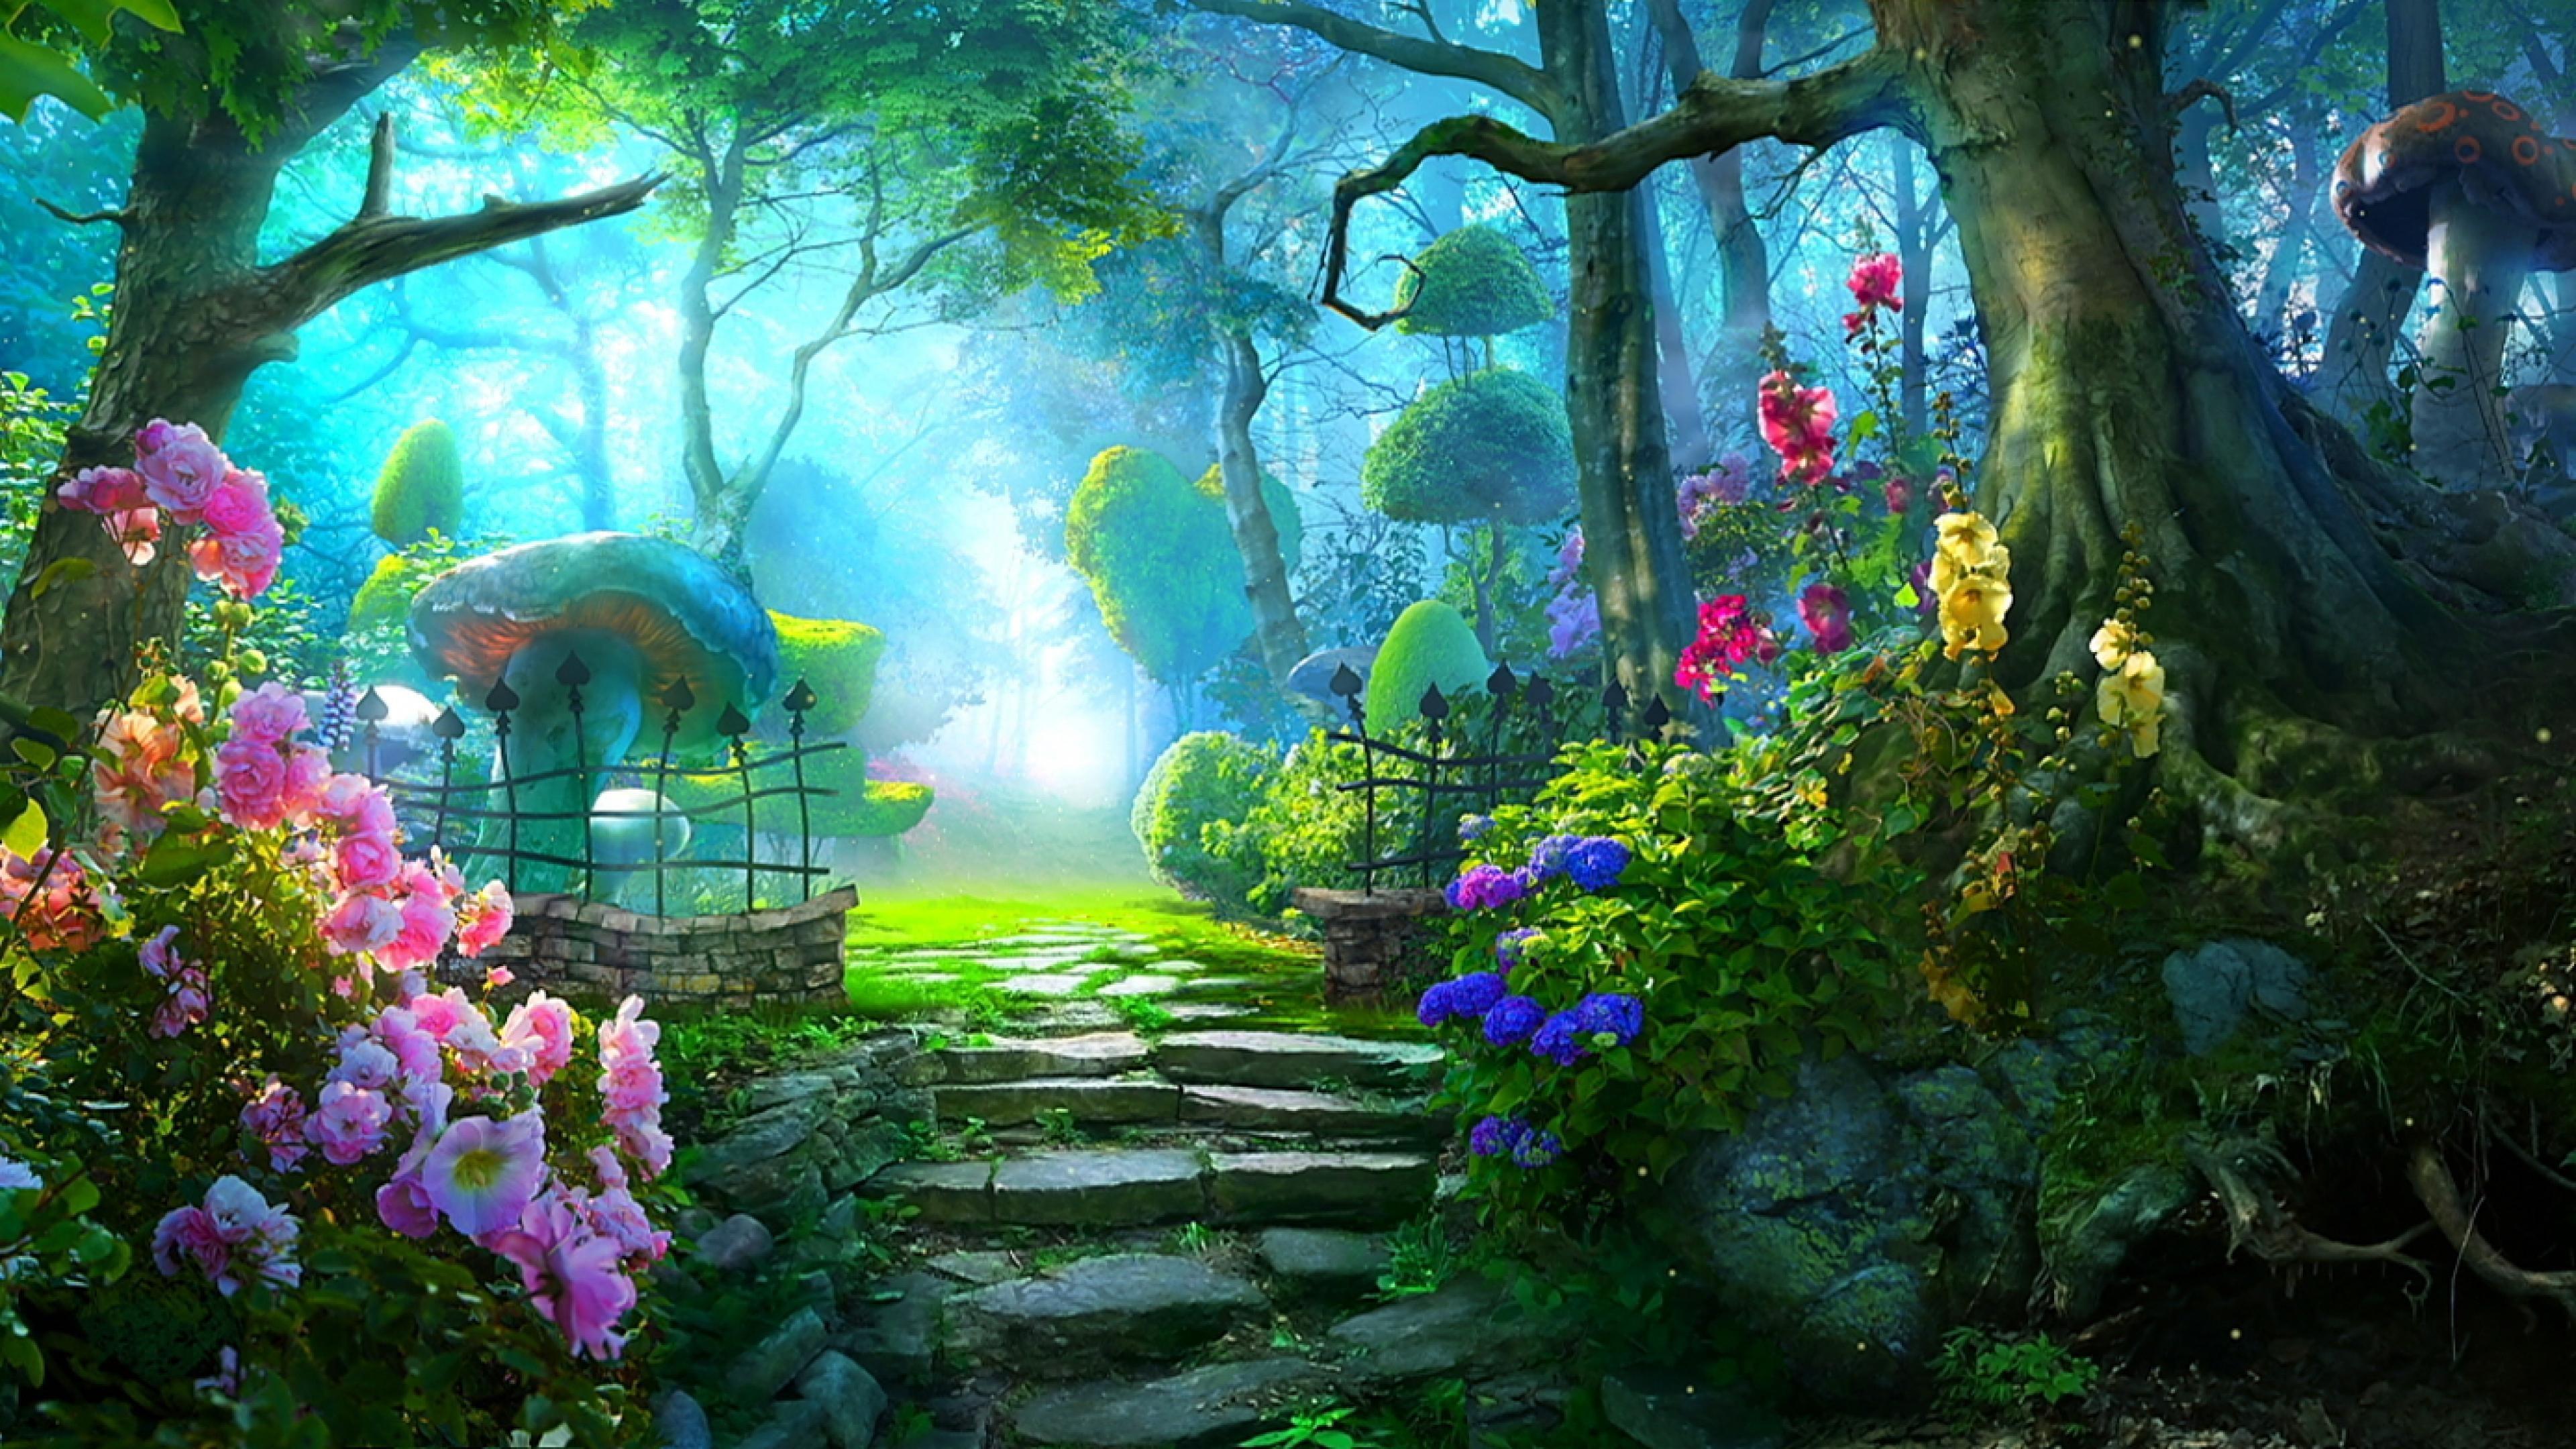 Bạn có muốn thỏa sức tưởng tượng và bước vào một khu vườn Mystic đầy bí ẩn và huyền bí không? Chắc chắn những hình ảnh đầy mơ mộng và khung cảnh tuyệt đẹp của khu vườn sẽ khiến bạn cảm thấy thật sự thích thú và hấp dẫn.